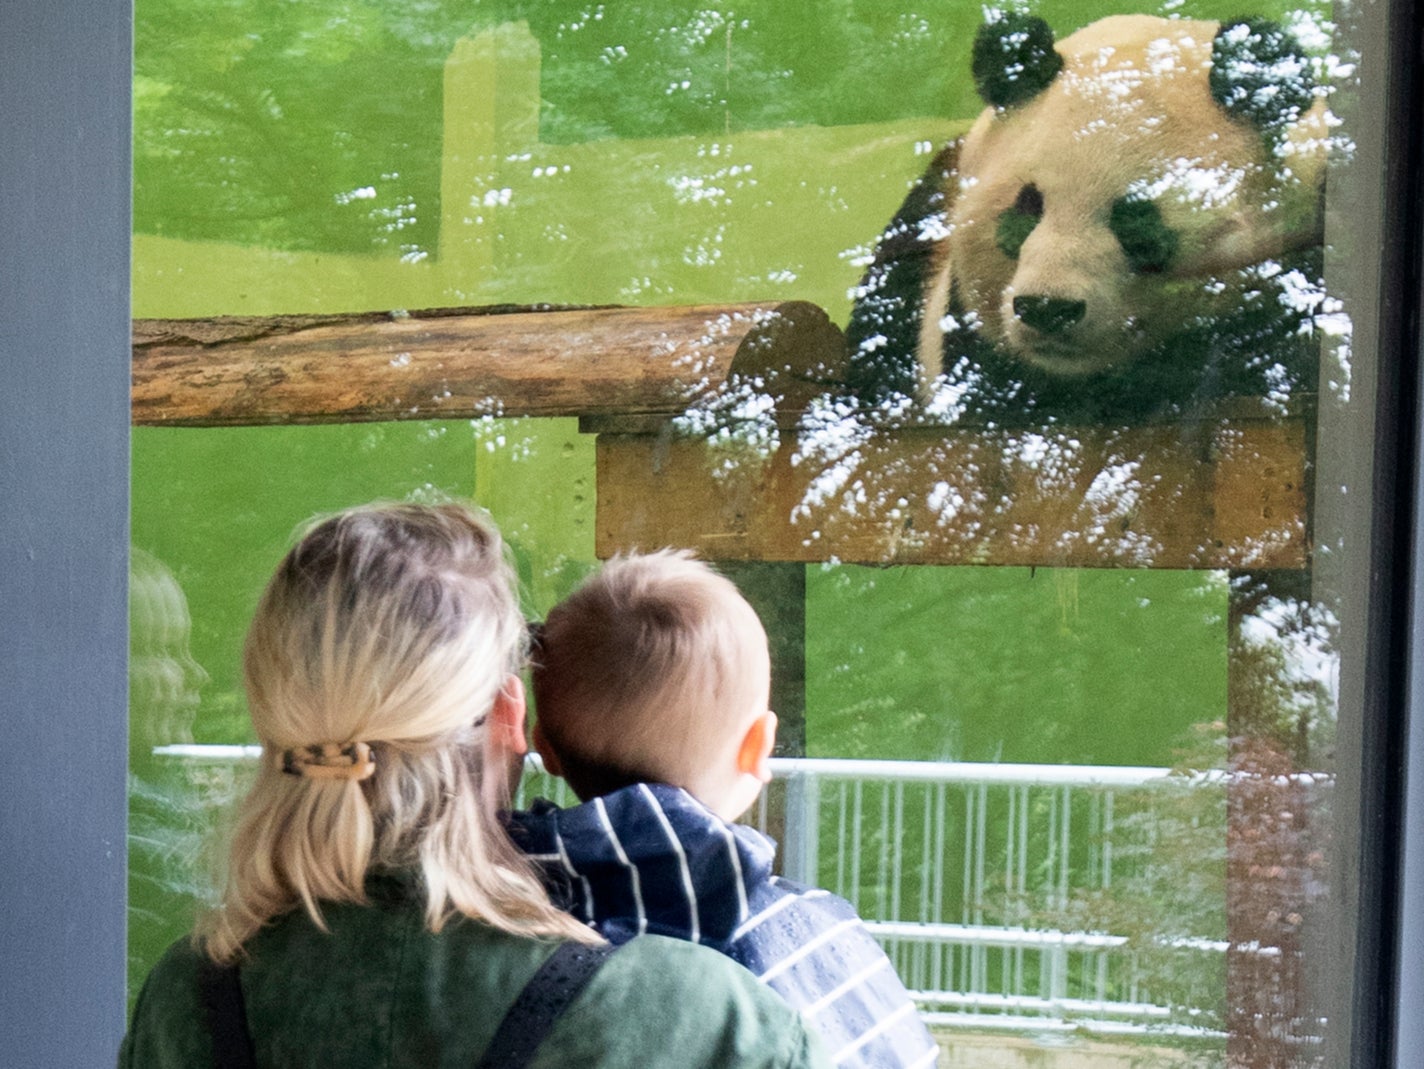 Members of the public look at a giant panda at Edinburgh Zoo in June